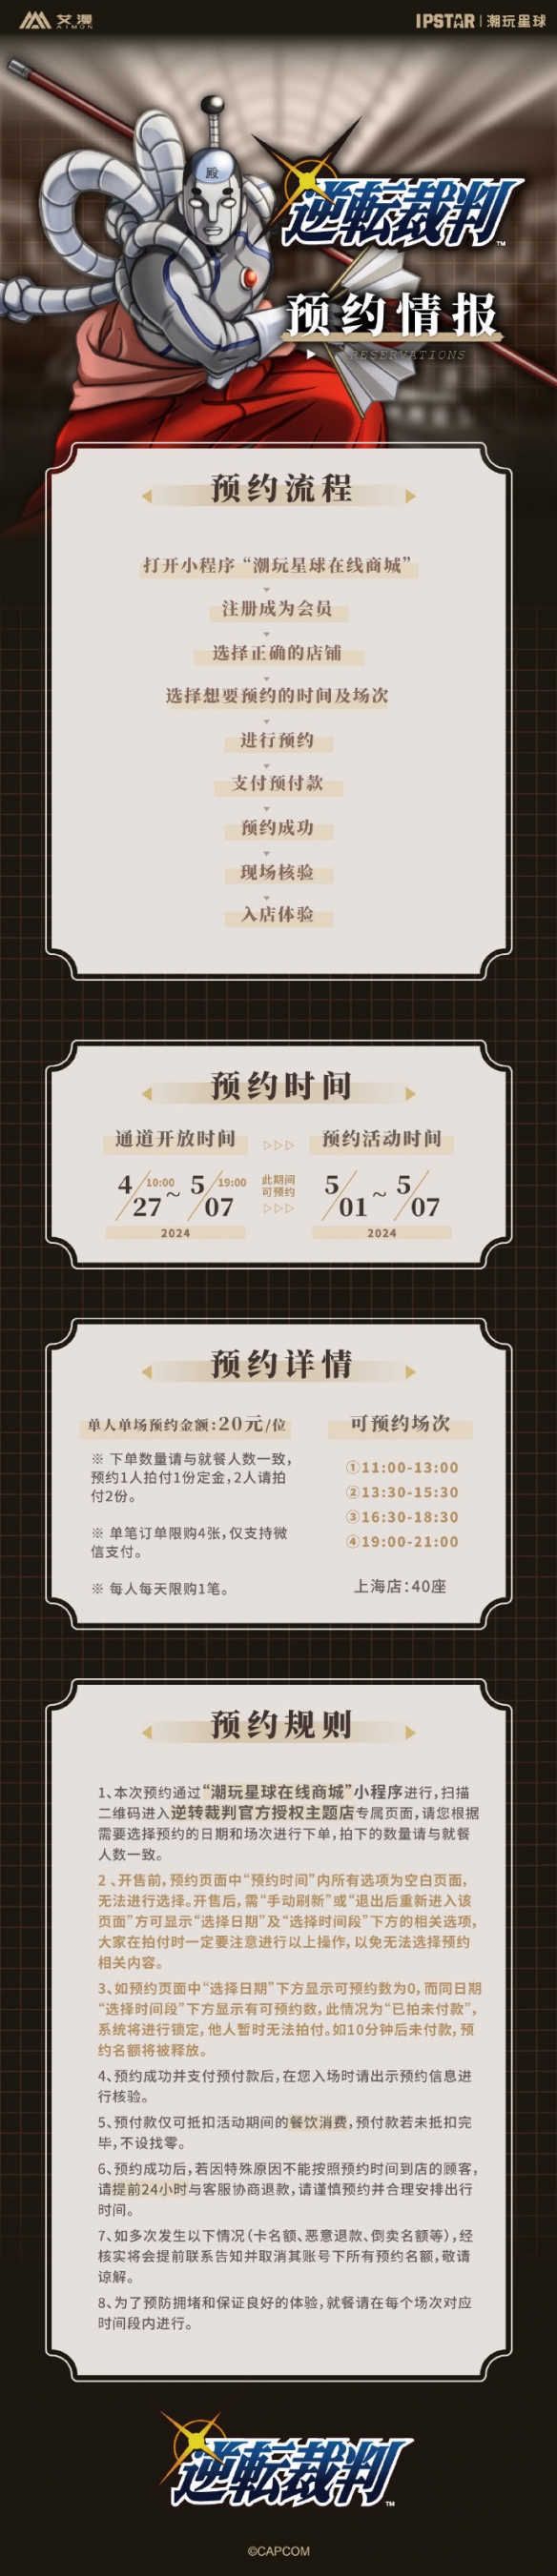 《逆转裁判》主题店上海分店将于5月1日正式开业！